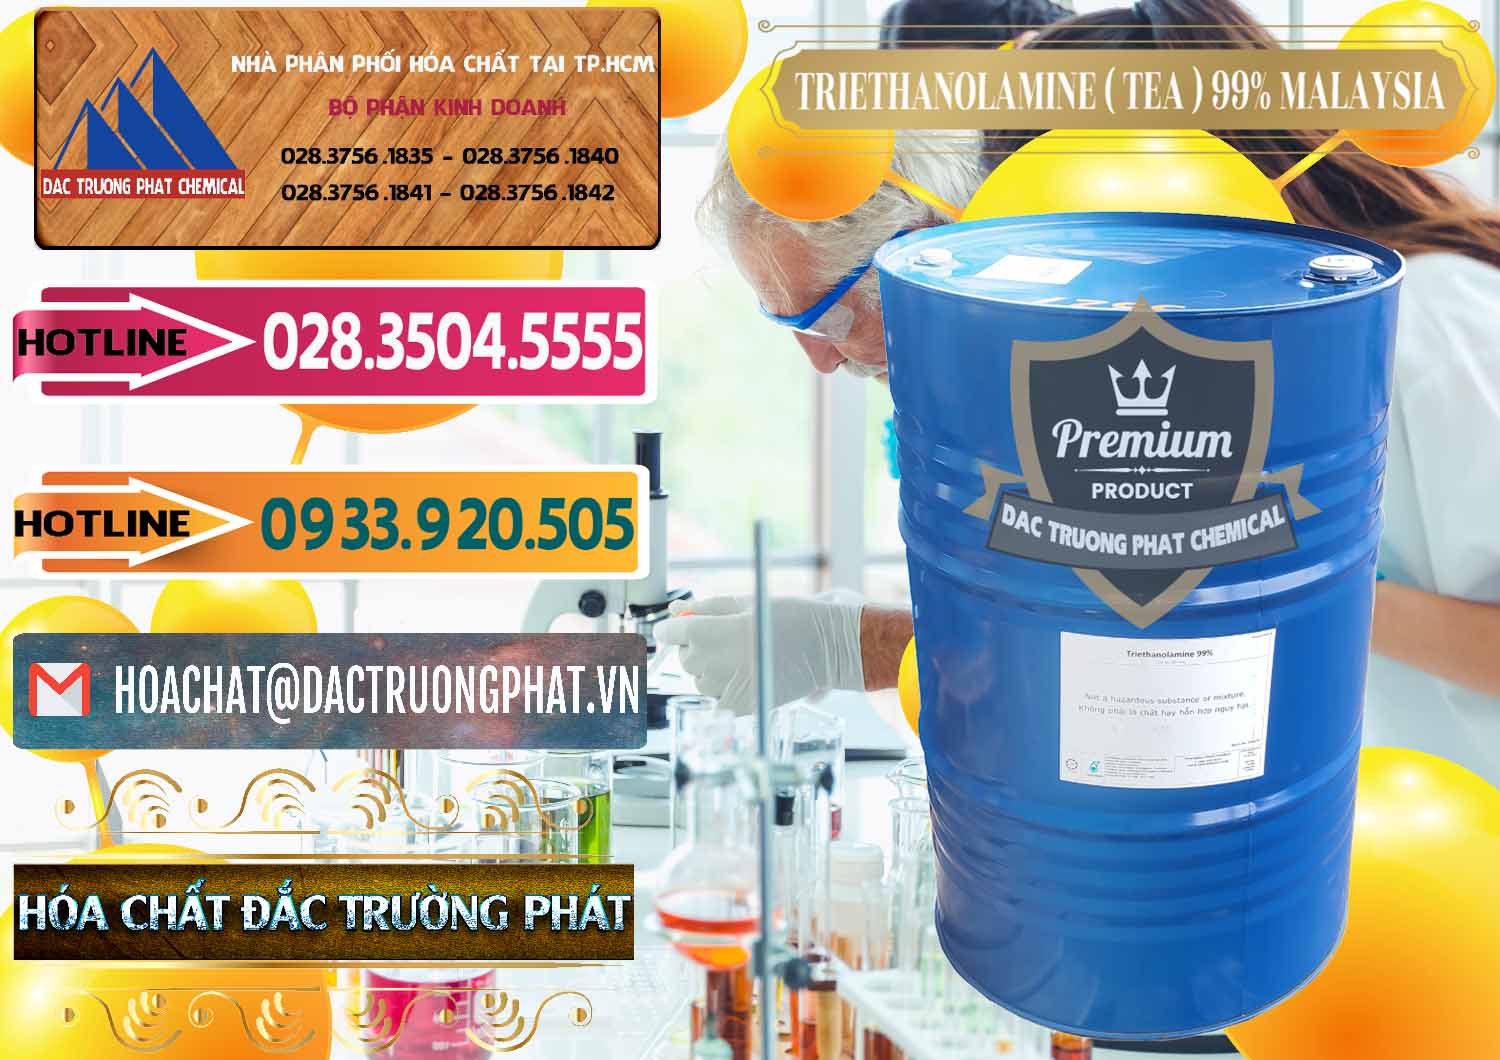 Chuyên cung cấp và bán TEA - Triethanolamine 99% Mã Lai Malaysia - 0323 - Đơn vị chuyên kinh doanh - cung cấp hóa chất tại TP.HCM - dactruongphat.vn